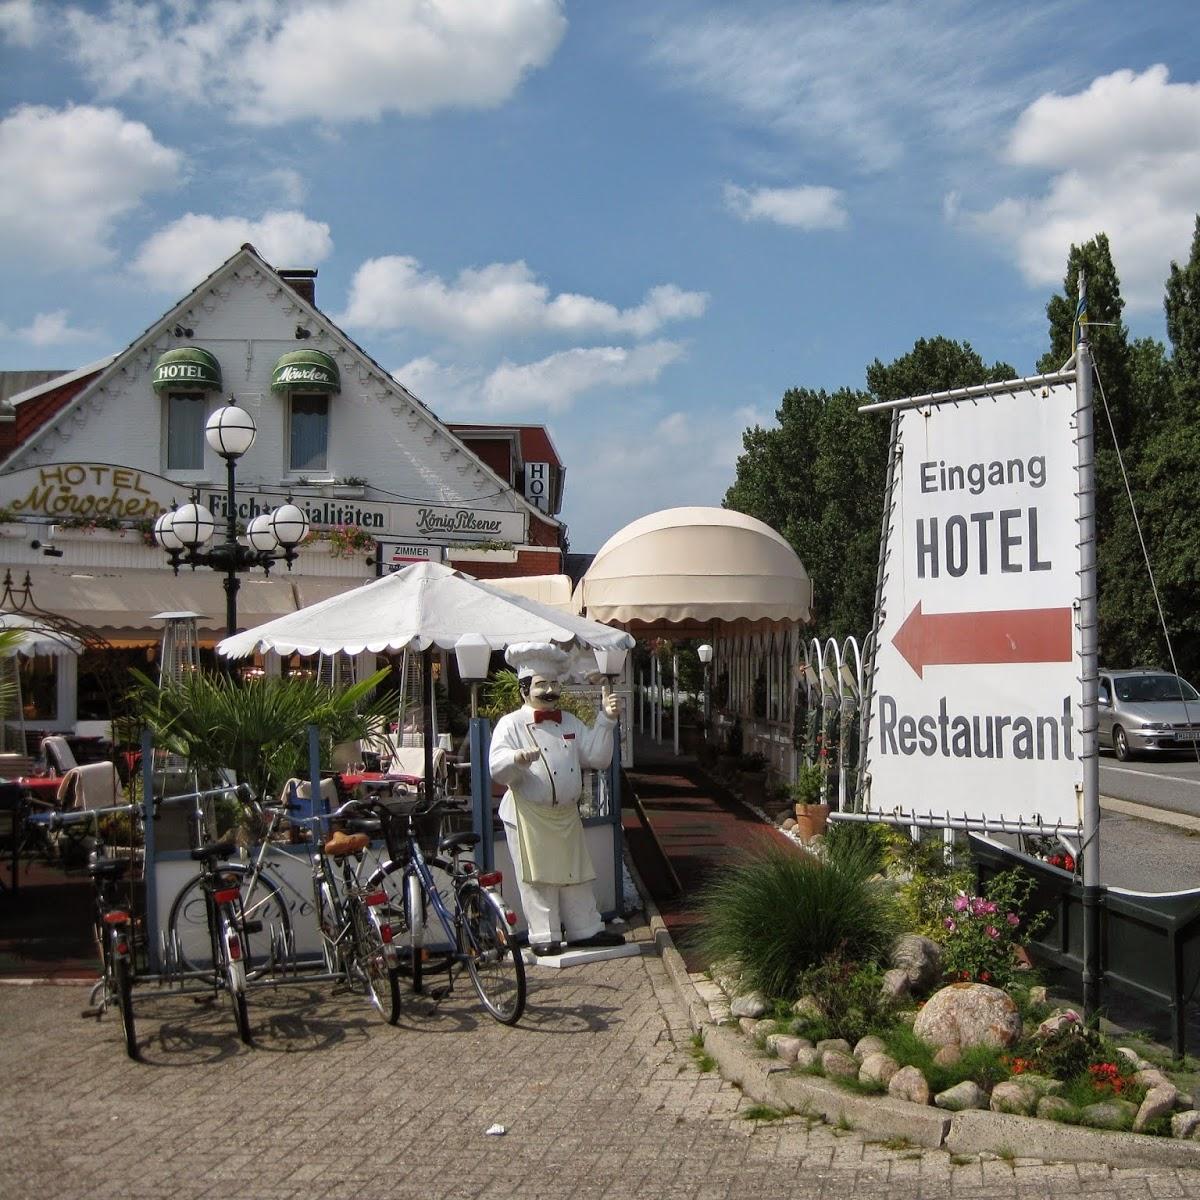 Restaurant "Hotel Restaurant Möwchen" in Norden